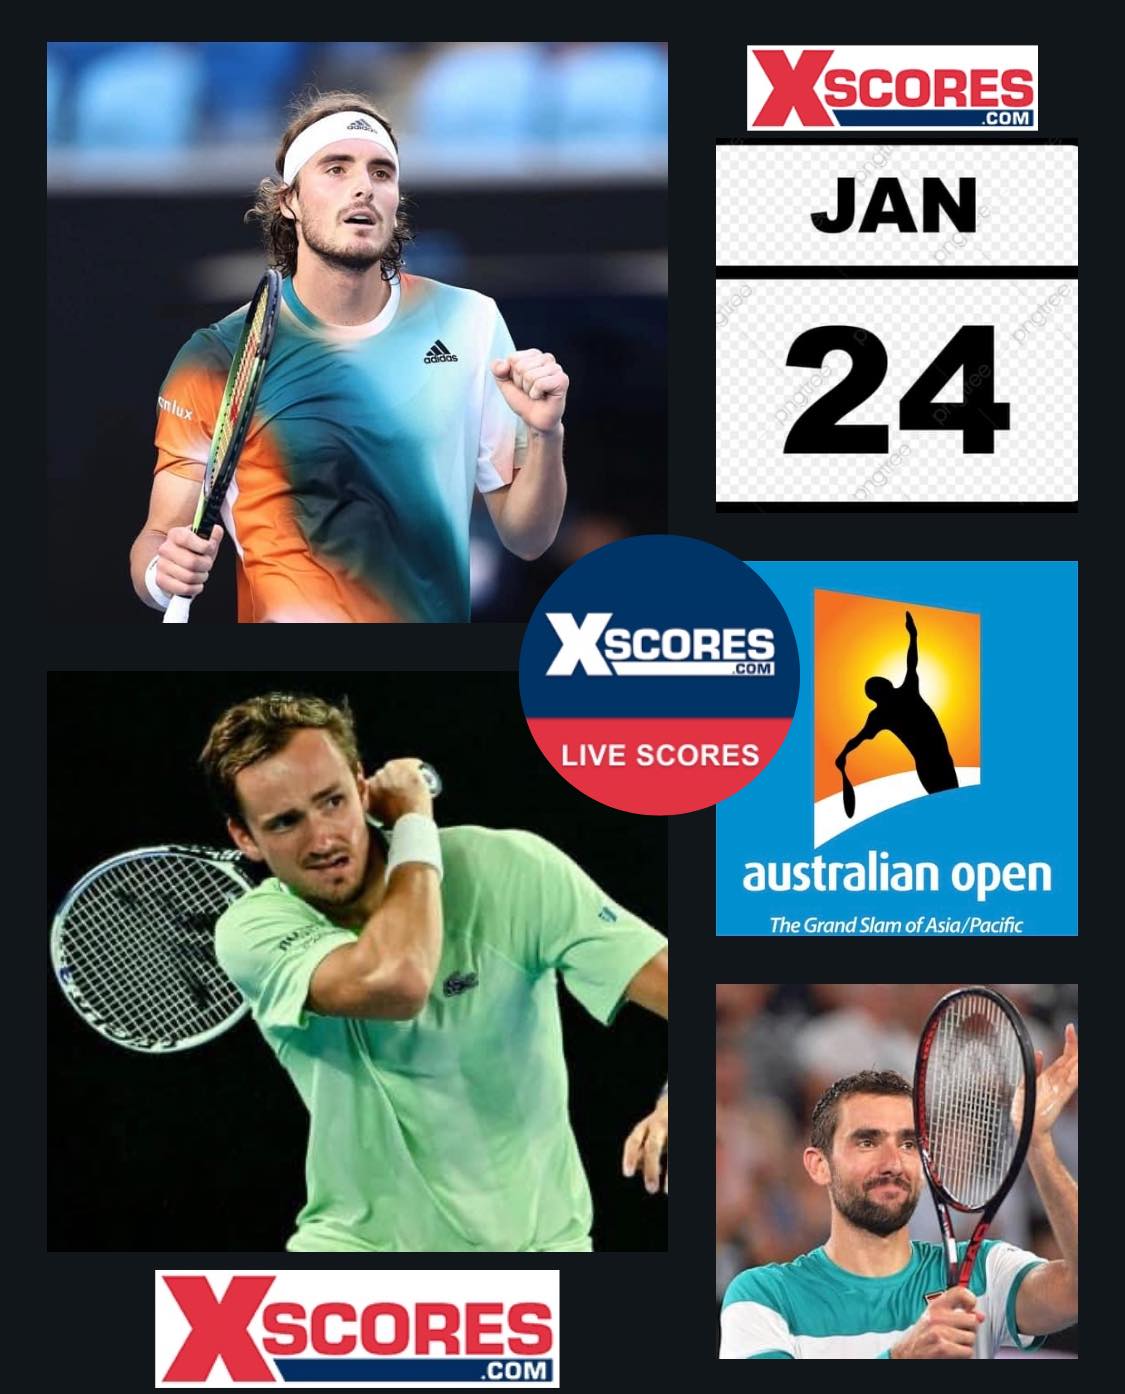 Grand Slam Australian Open 2022 Mon 24 January